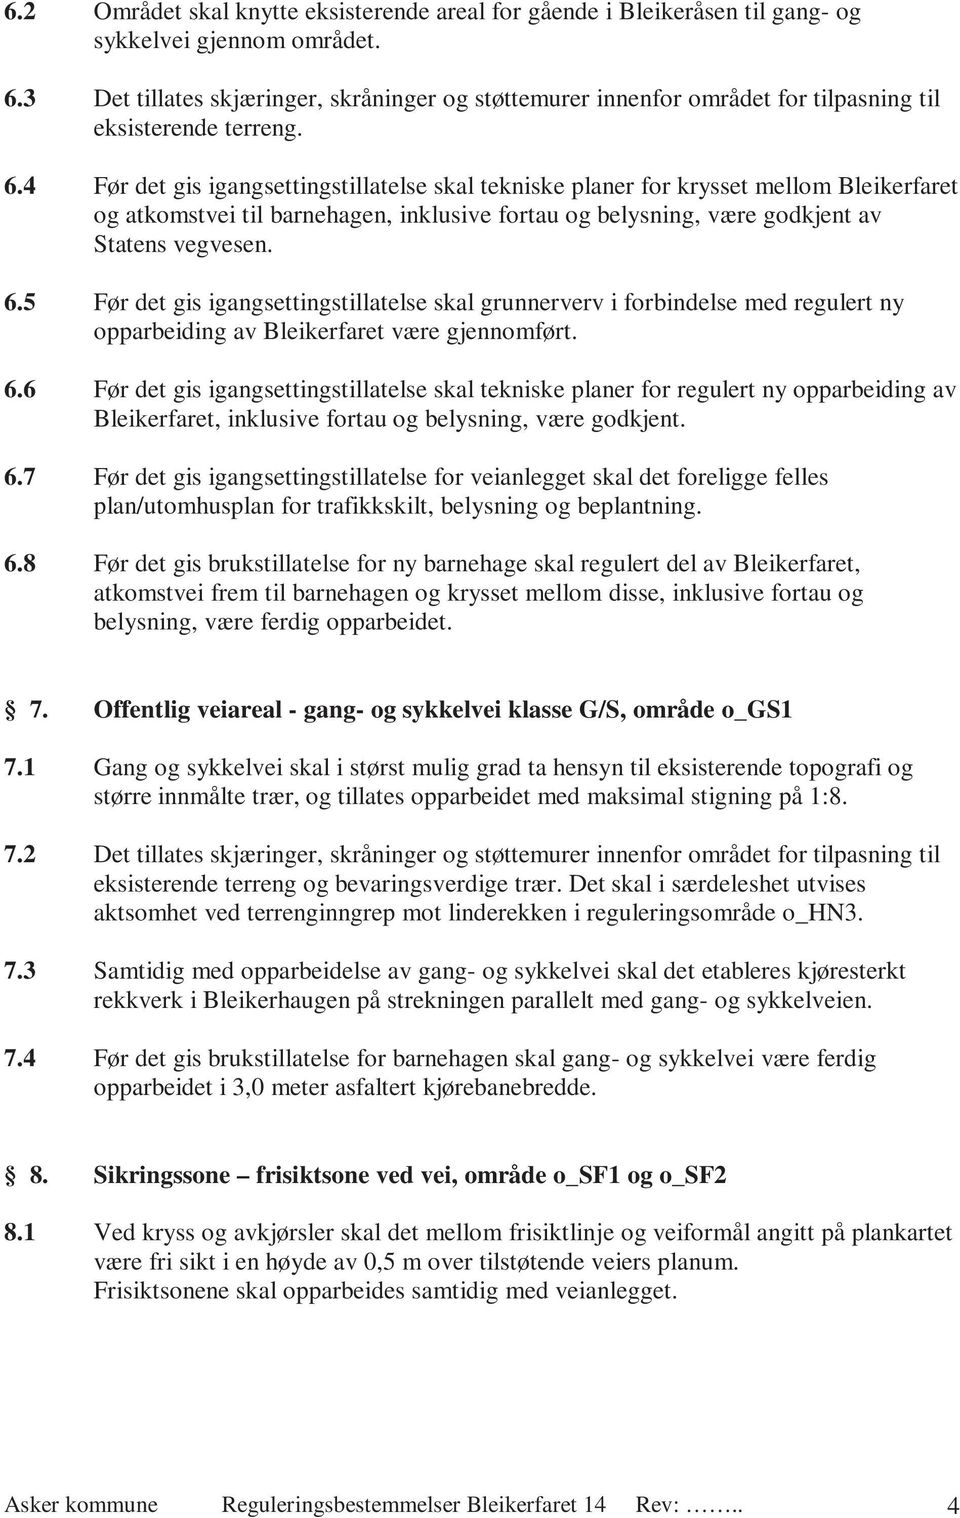 4 Før det gis igangsettingstillatelse skal tekniske planer for krysset mellom Bleikerfaret og atkomstvei til barnehagen, inklusive fortau og belysning, være godkjent av Statens vegvesen. 6.